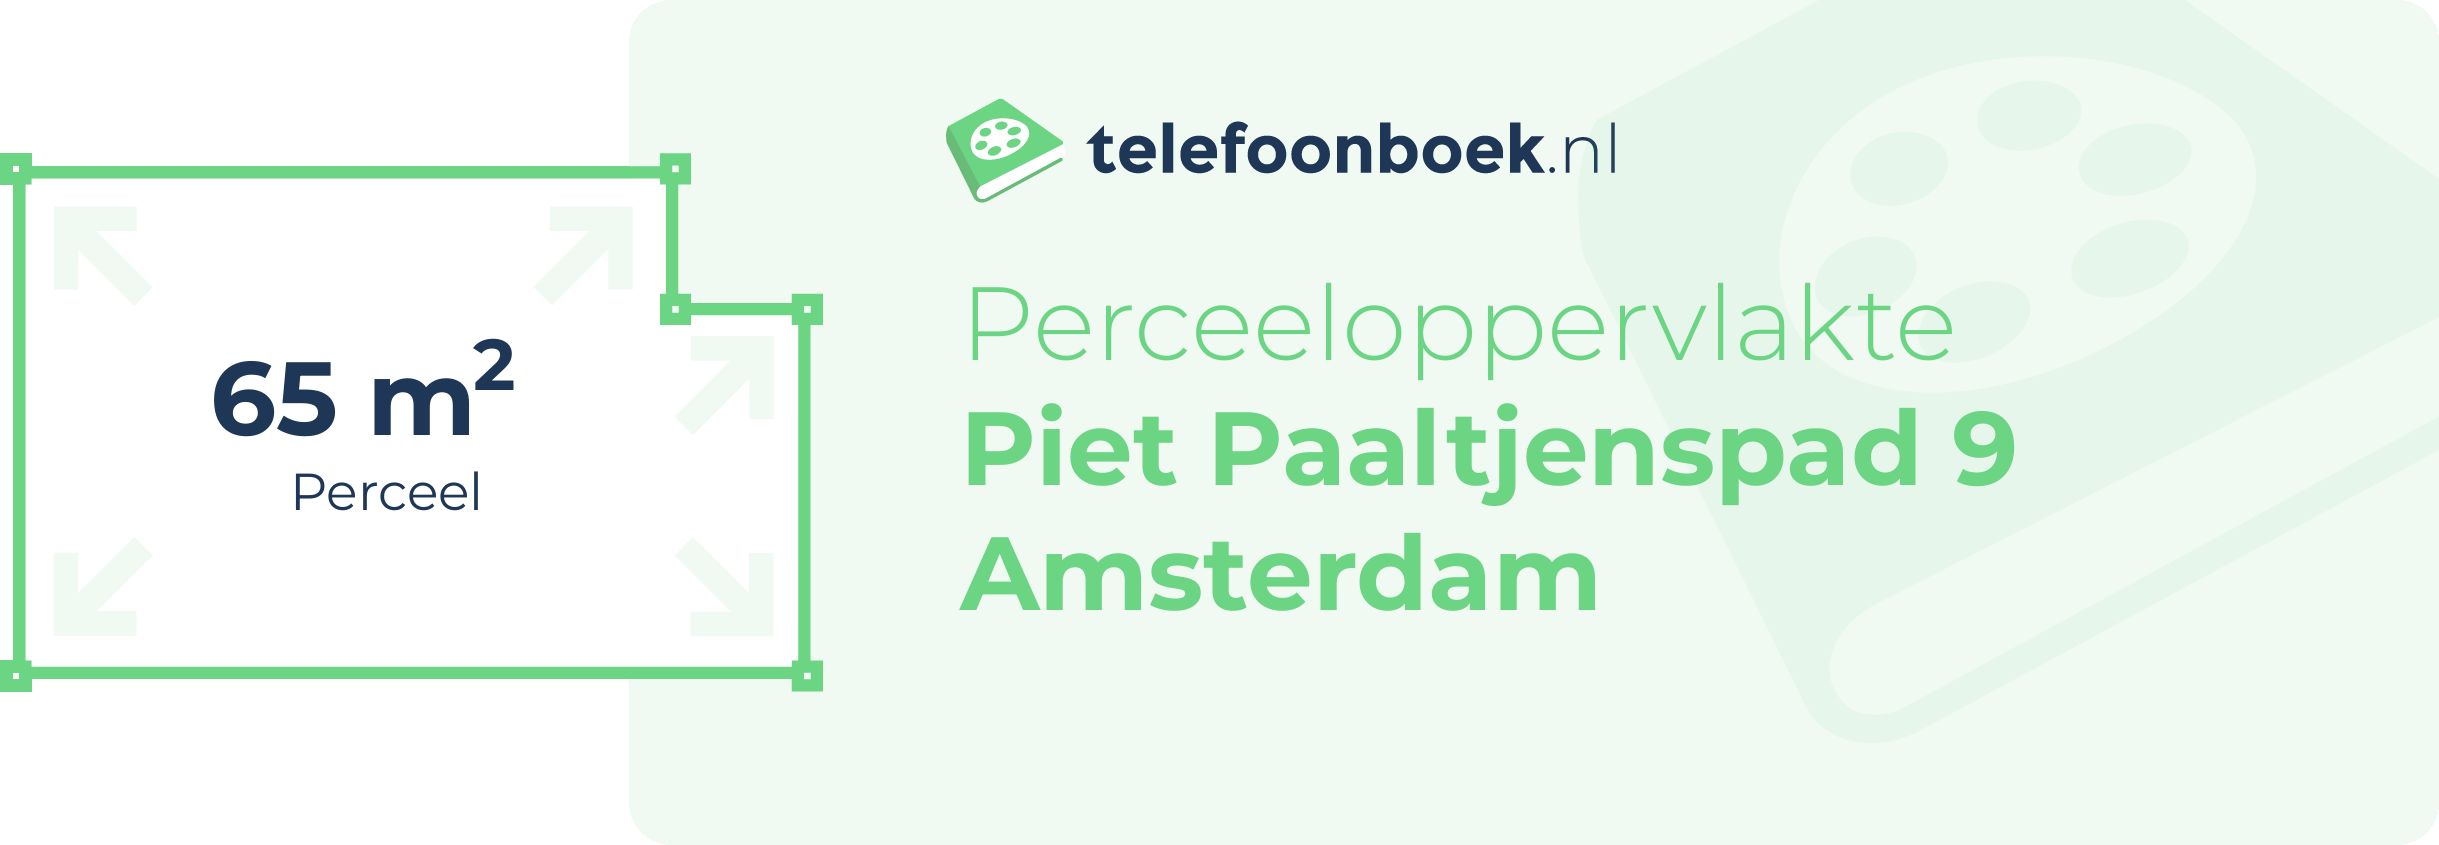 Perceeloppervlakte Piet Paaltjenspad 9 Amsterdam